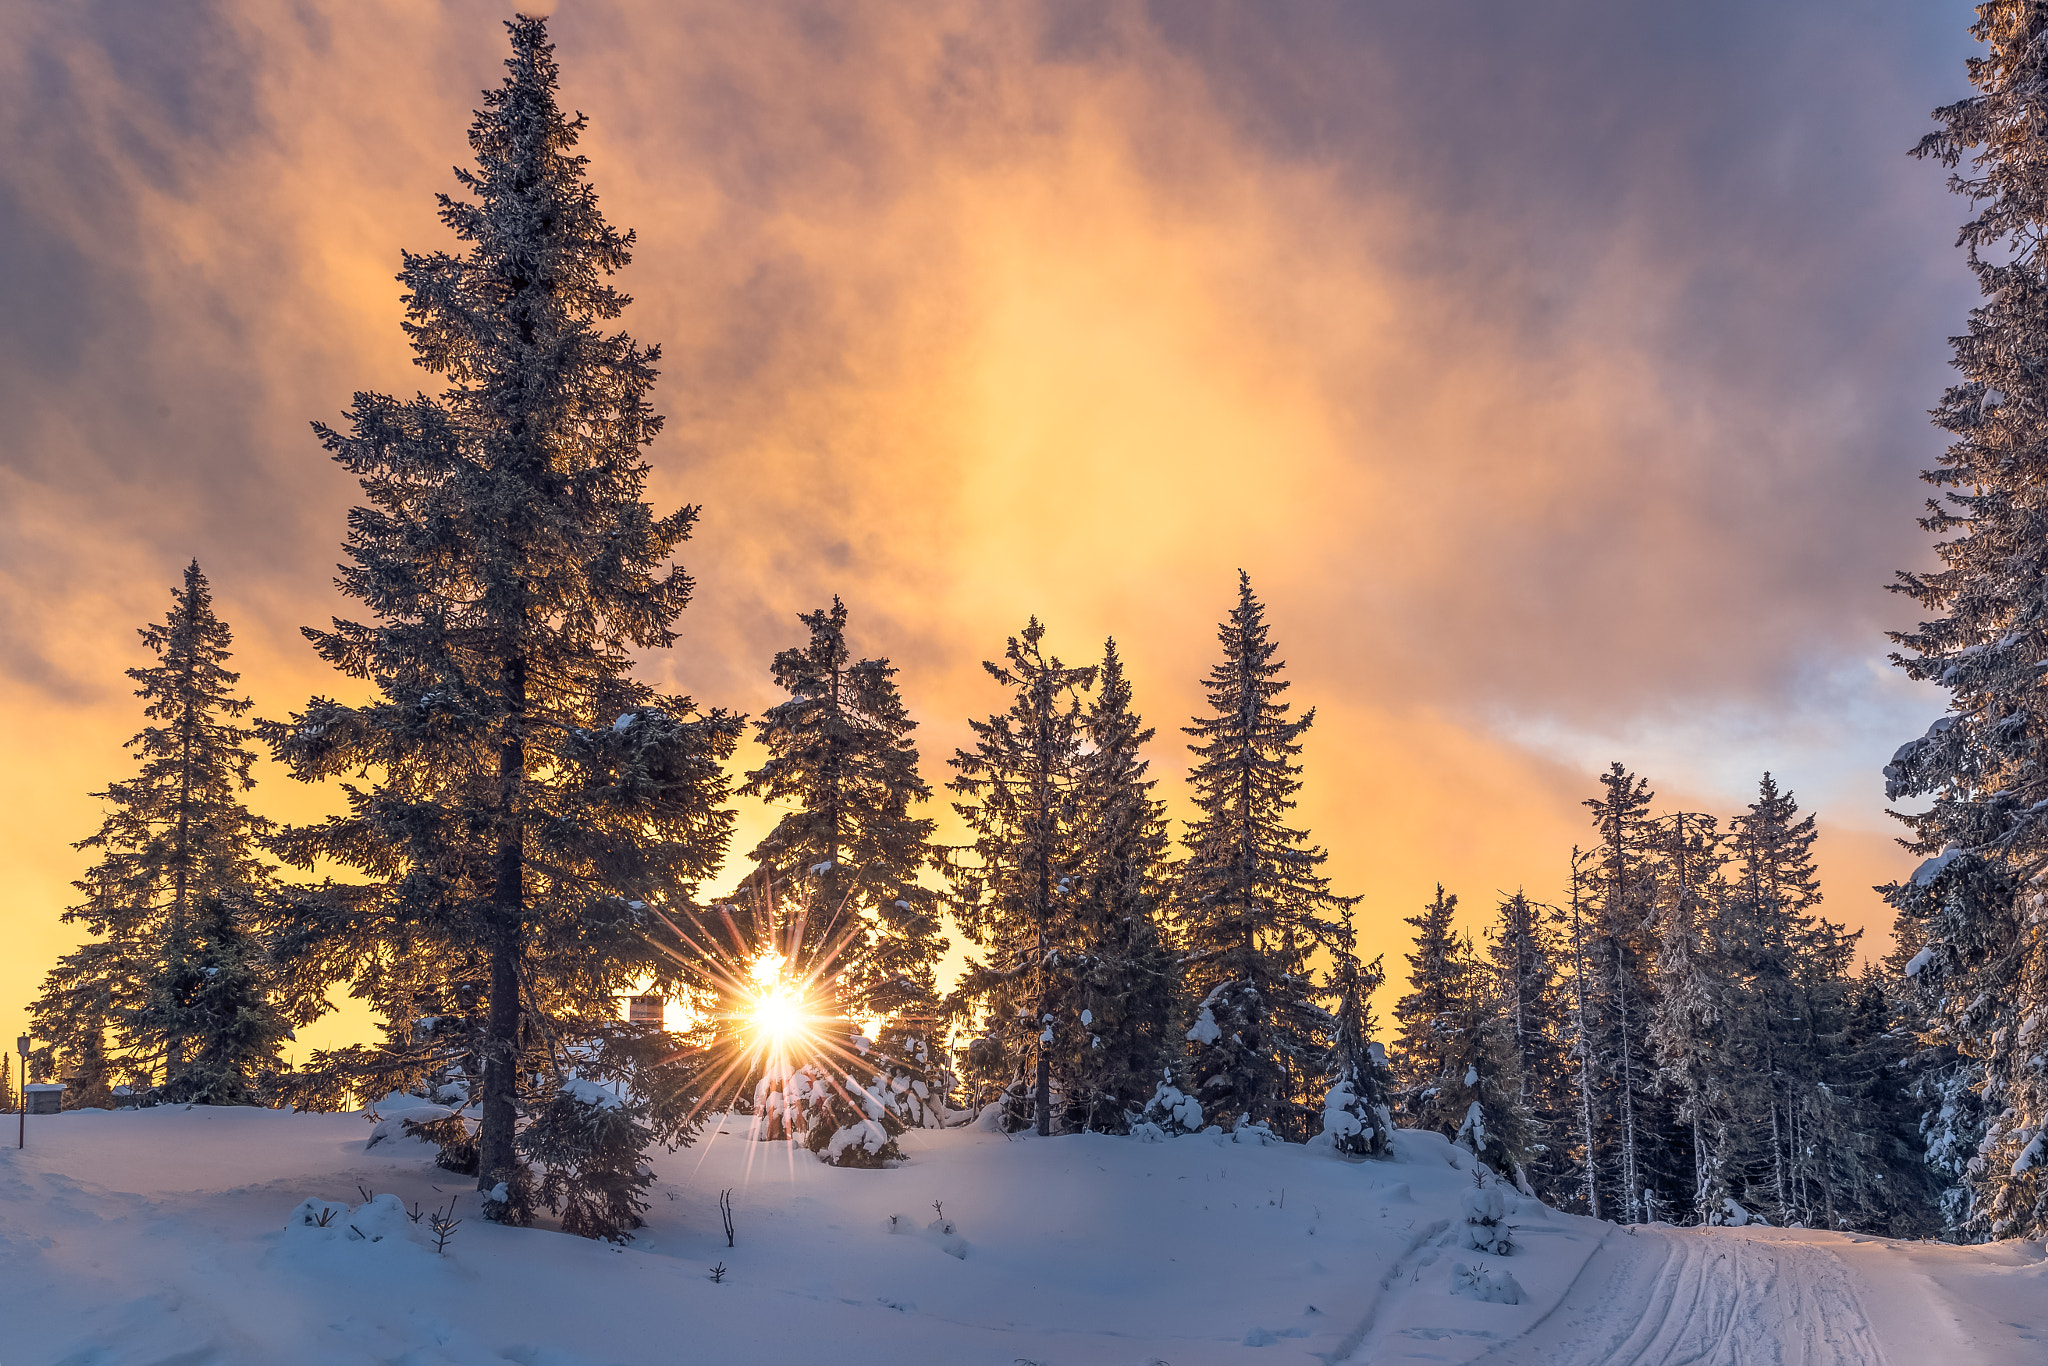 Cloudy Sunset over Winter Forest by Jørn Allan Pedersen